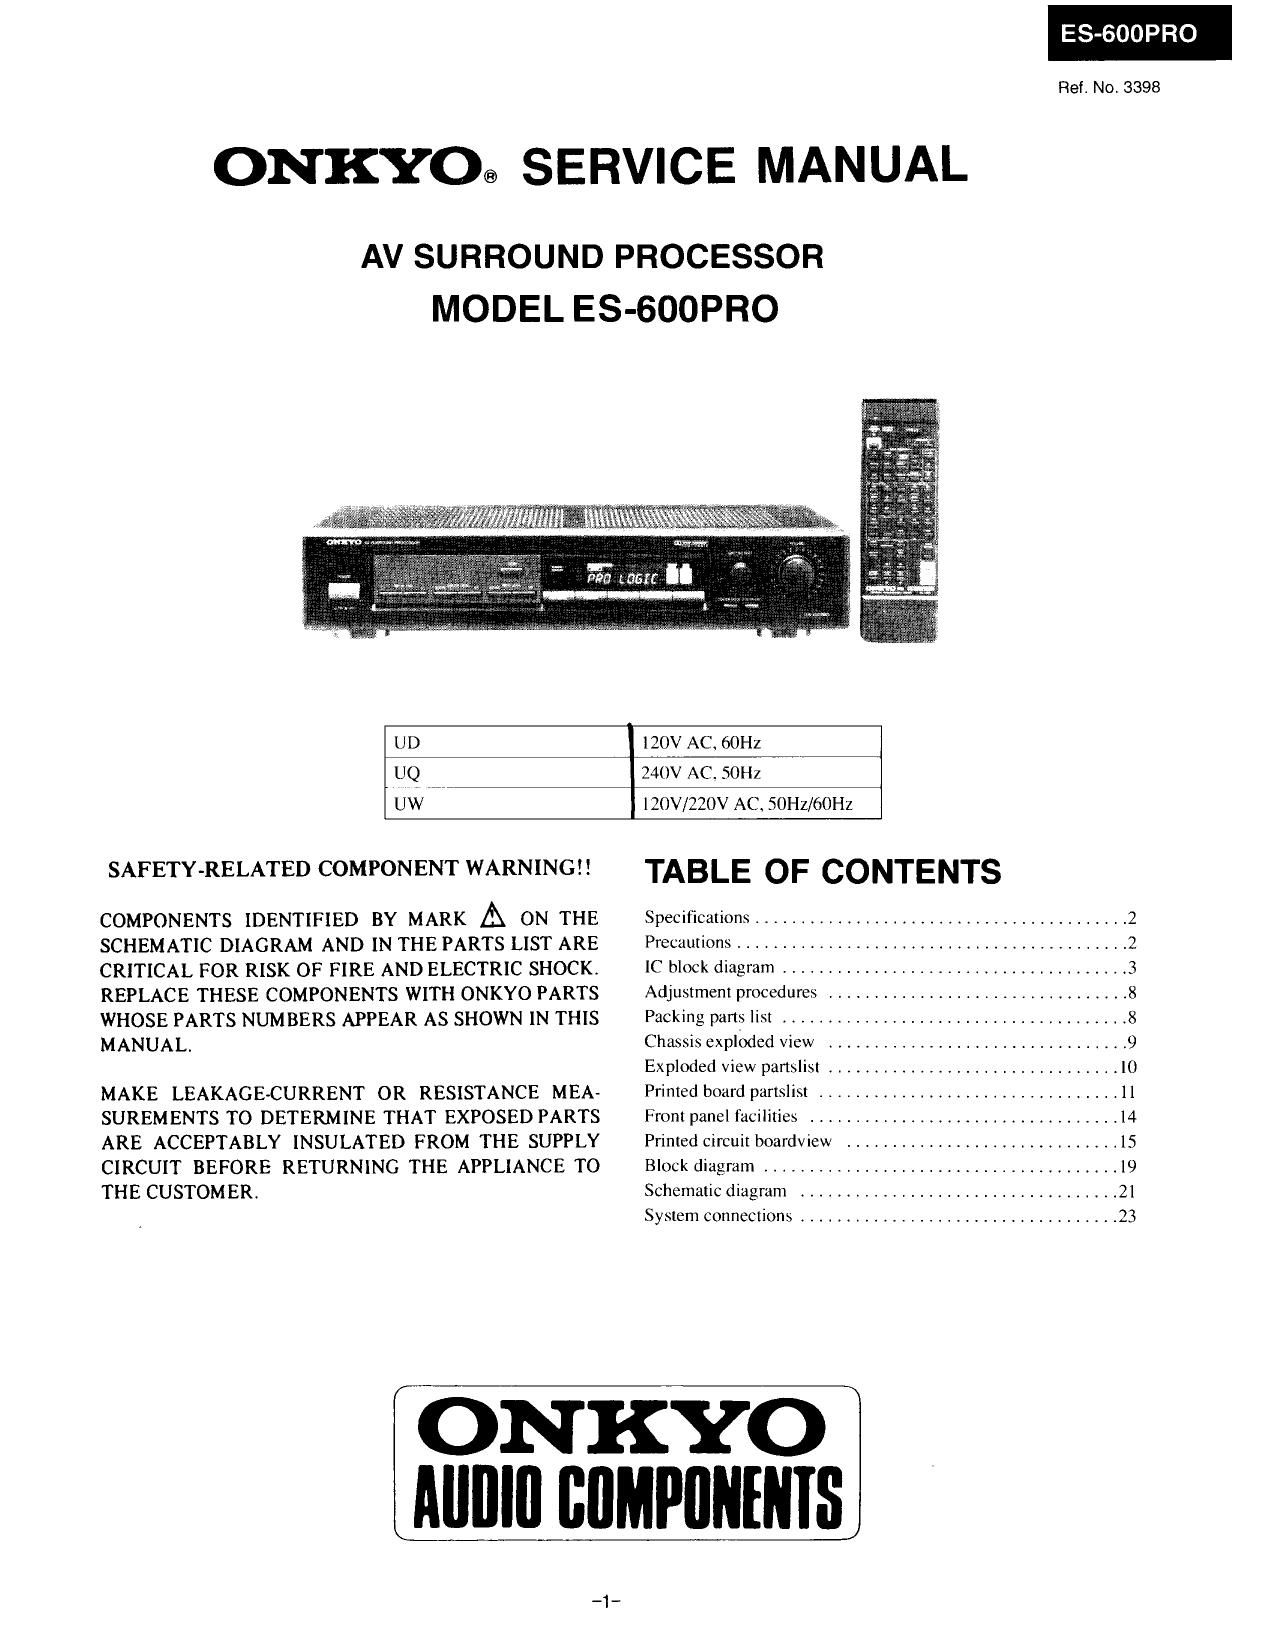 Onkyo ES 600 PRO Service Manual